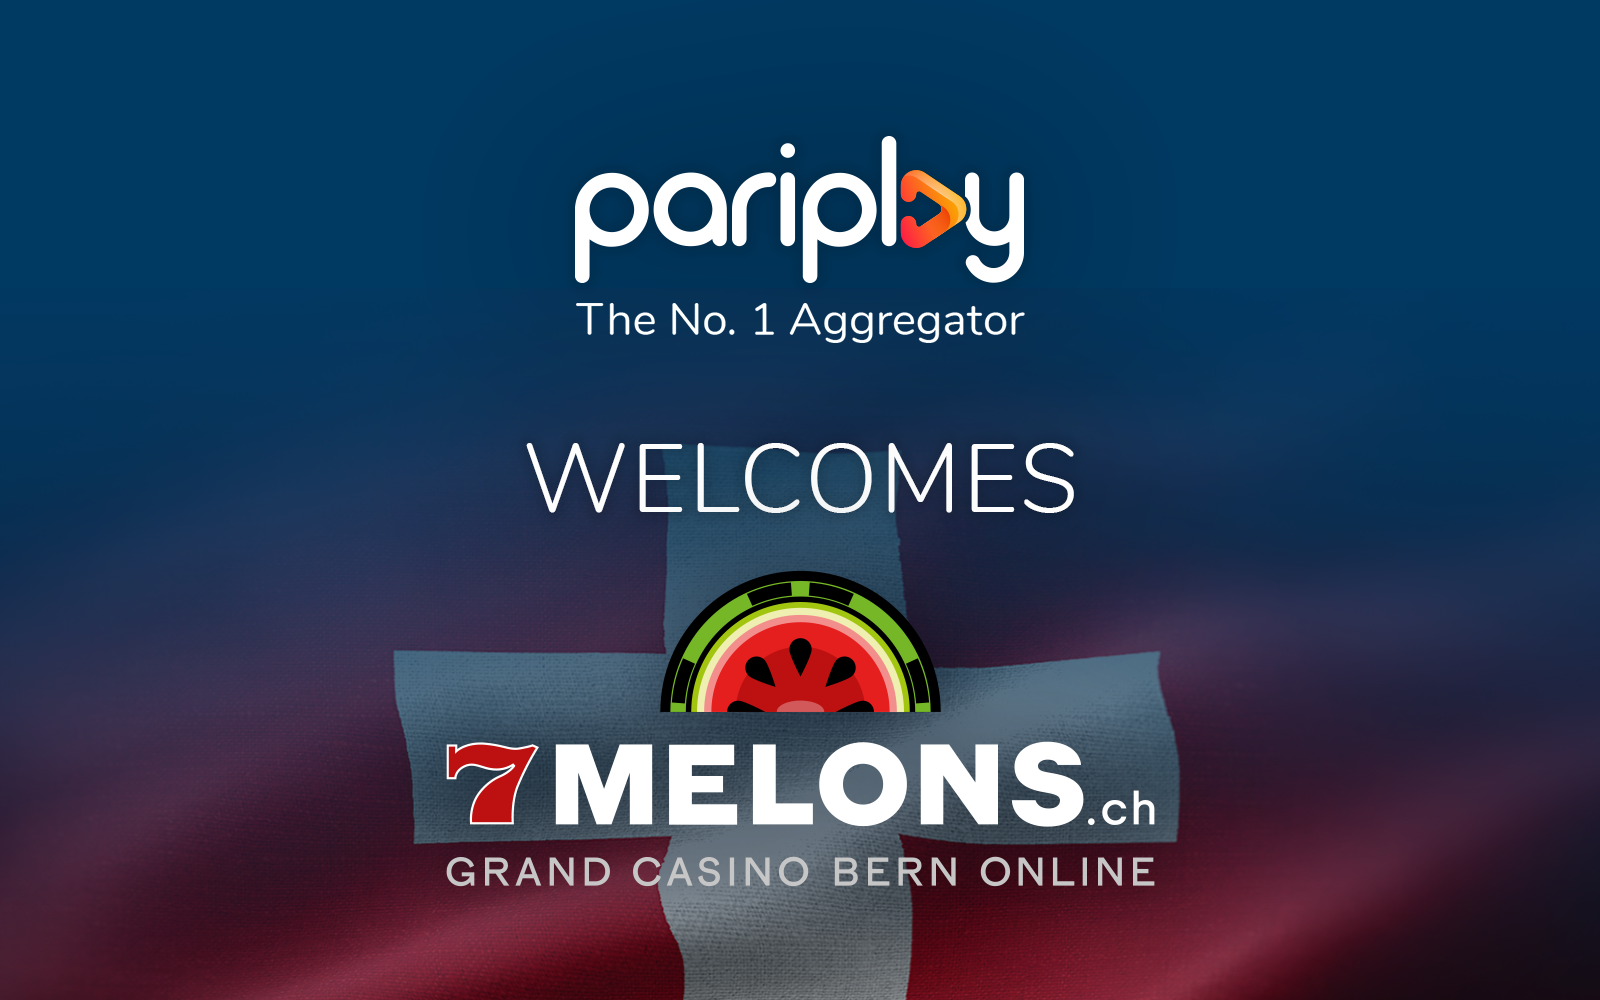 Grand Casino Bern Pariplay